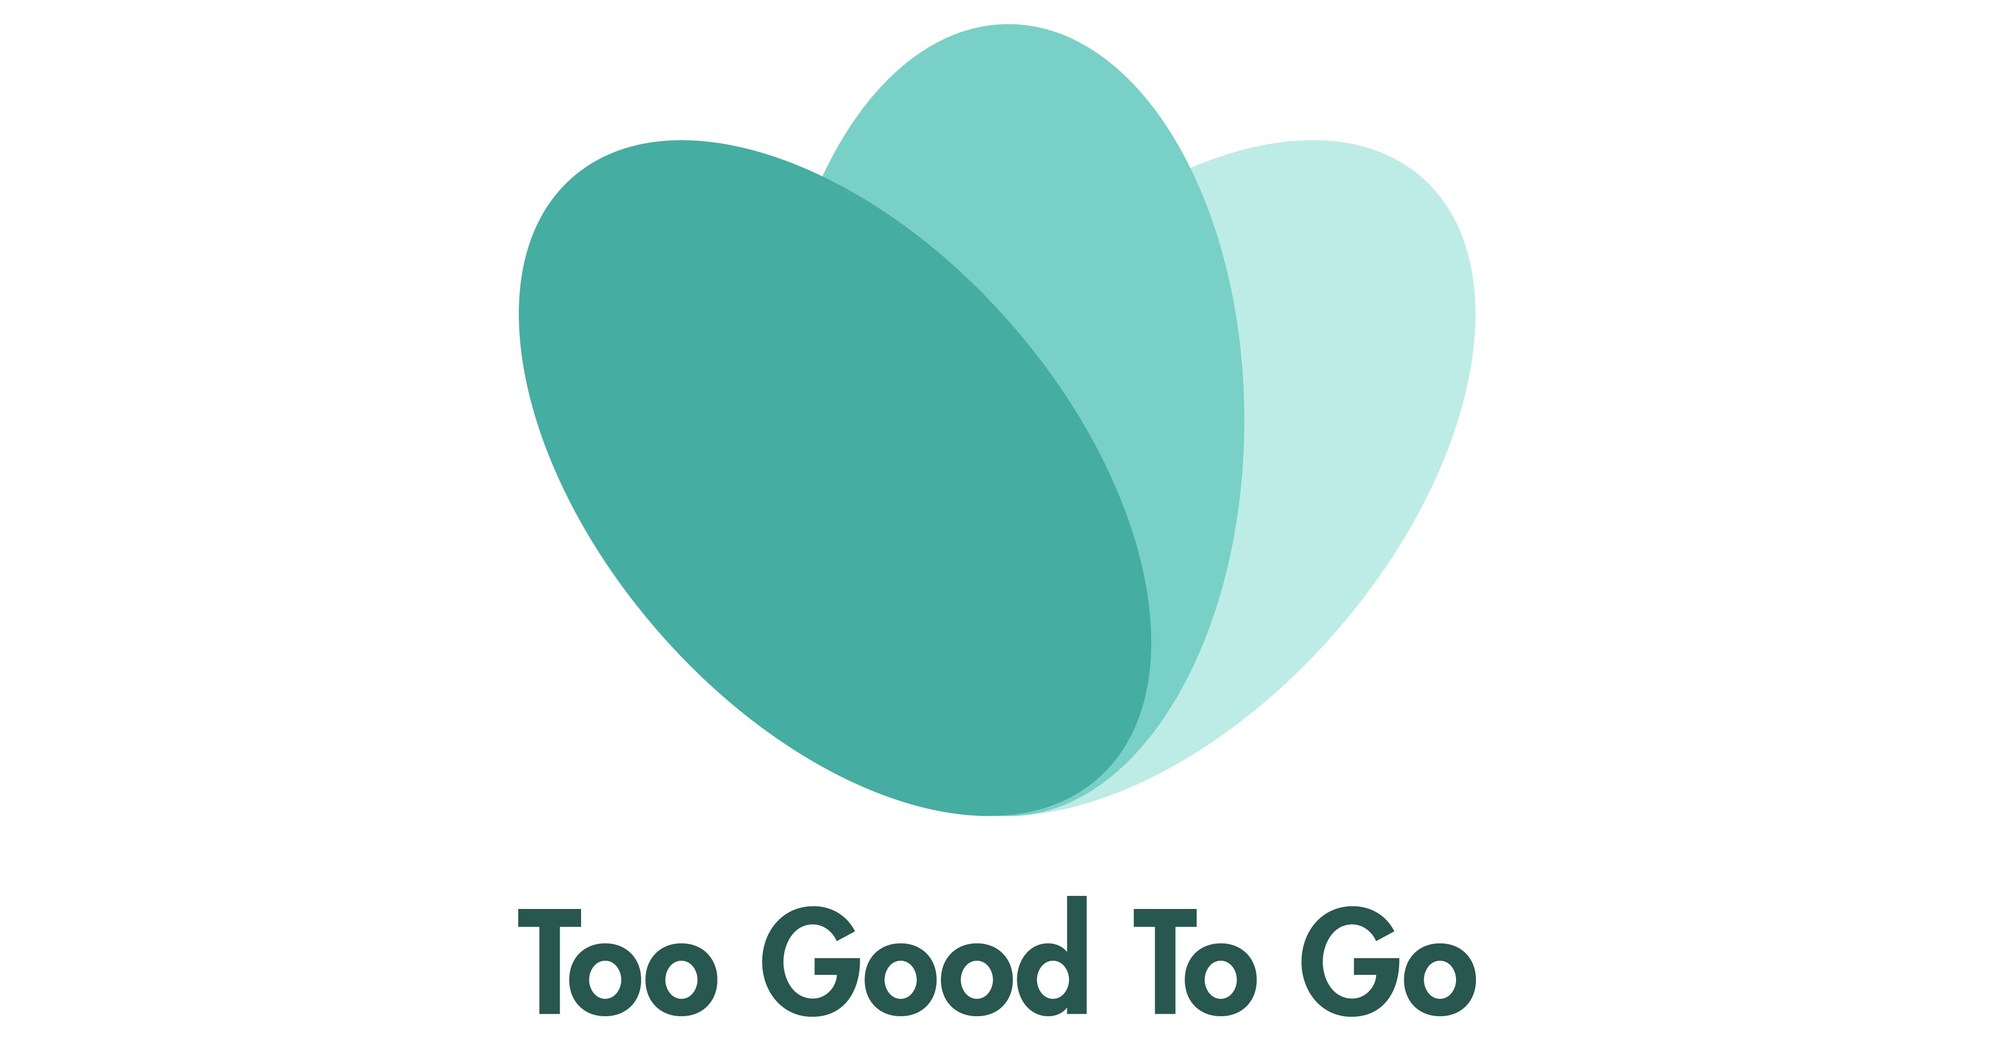 https://mma.prnewswire.com/media/1503549/Too_Good_To_Go_Logo.jpg?p=facebook